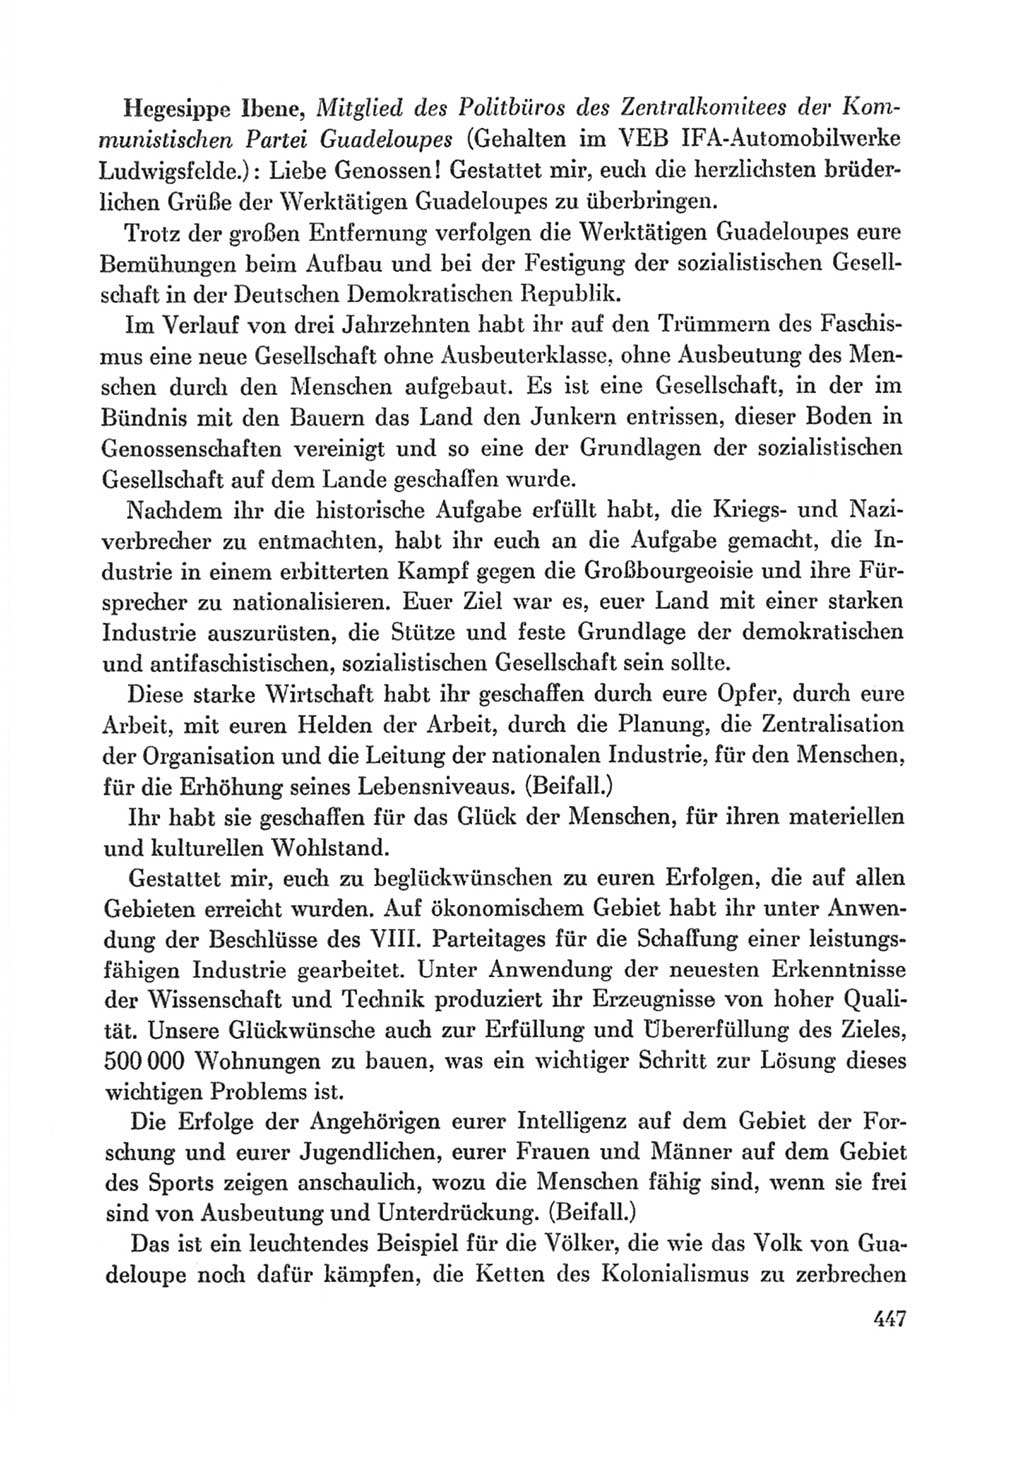 Protokoll der Verhandlungen des Ⅸ. Parteitages der Sozialistischen Einheitspartei Deutschlands (SED) [Deutsche Demokratische Republik (DDR)] 1976, Band 1, Seite 447 (Prot. Verh. Ⅸ. PT SED DDR 1976, Bd. 1, S. 447)